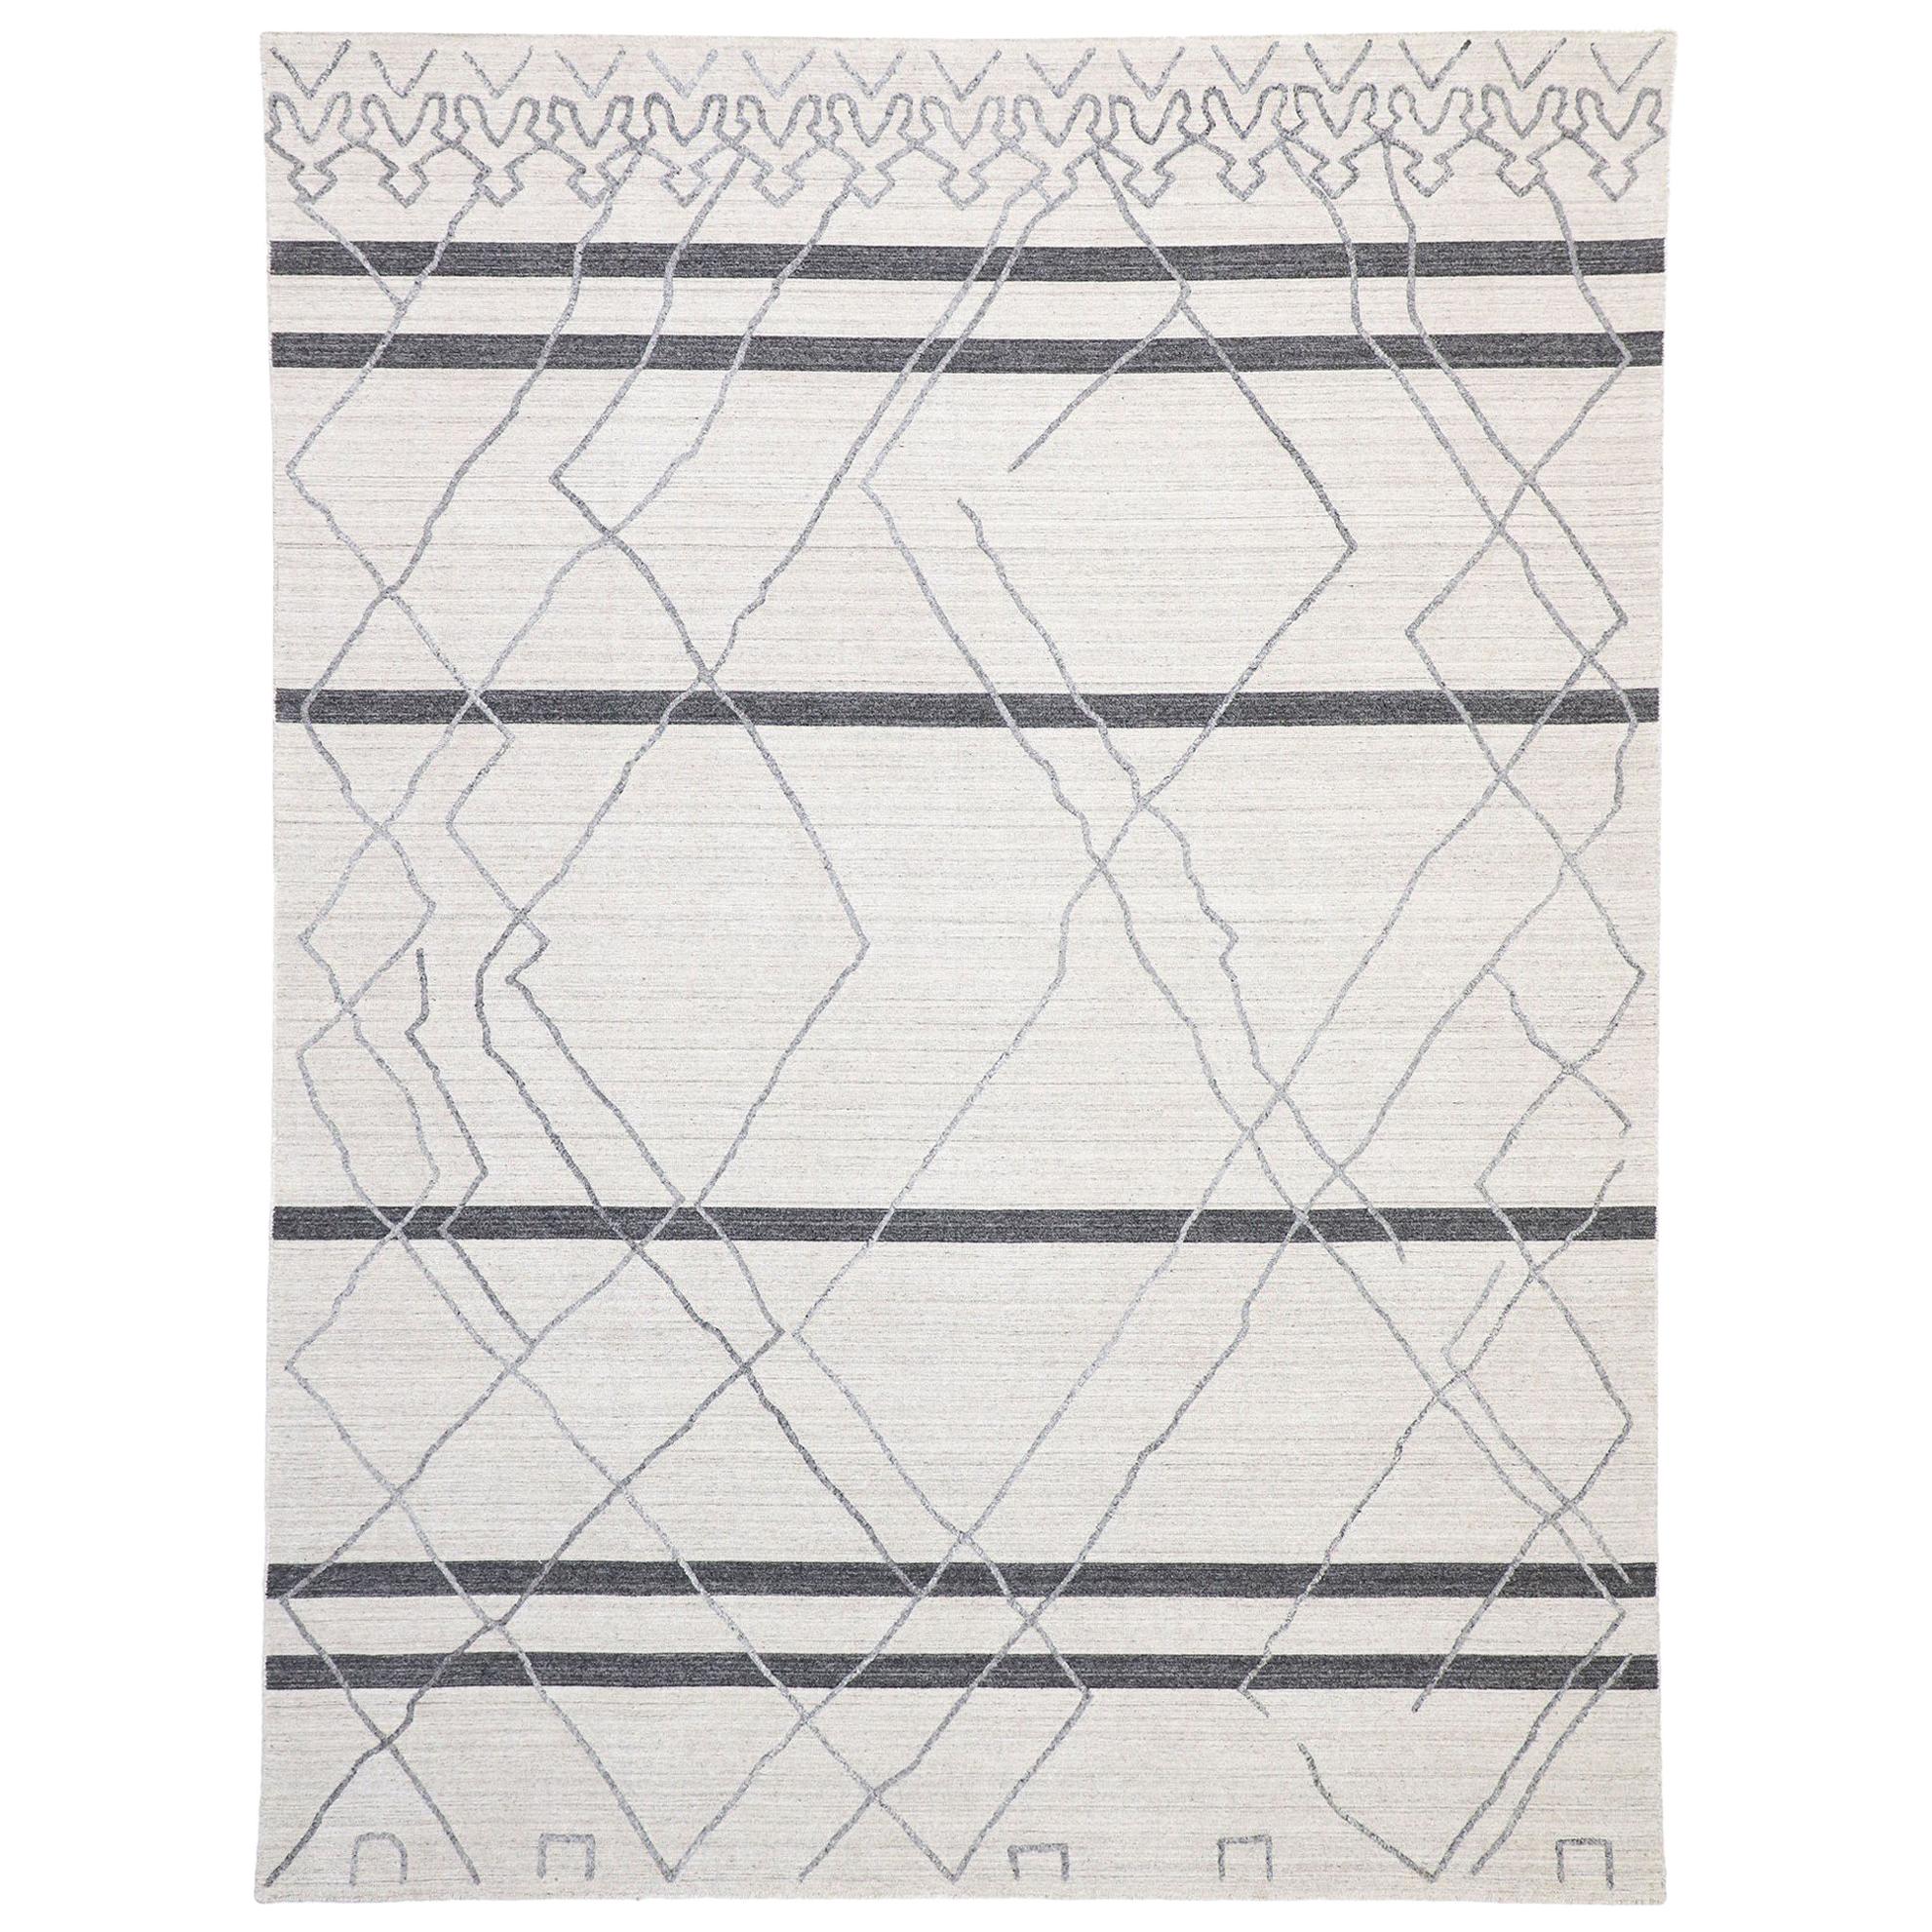 Nouveau tapis contemporain de style marocain gris moderne avec motif surélevé